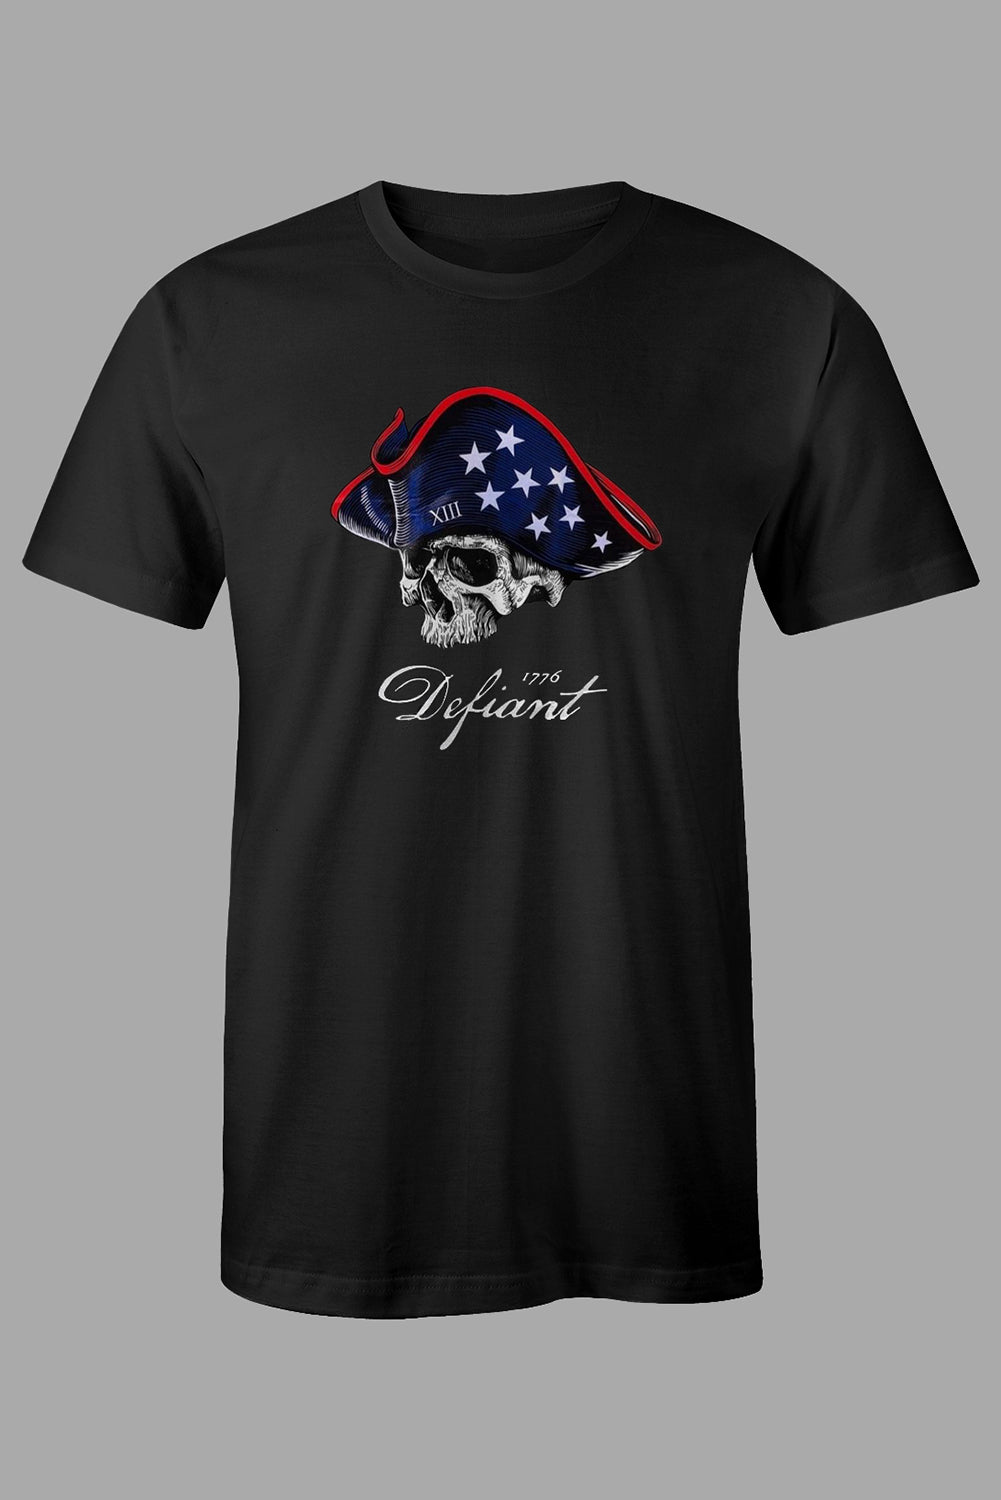 Black American Flag Skull Graphic Print Short Sleeve Men's T Shirt Black 62%Polyester+32%Cotton+6%Elastane Men's Tops JT's Designer Fashion